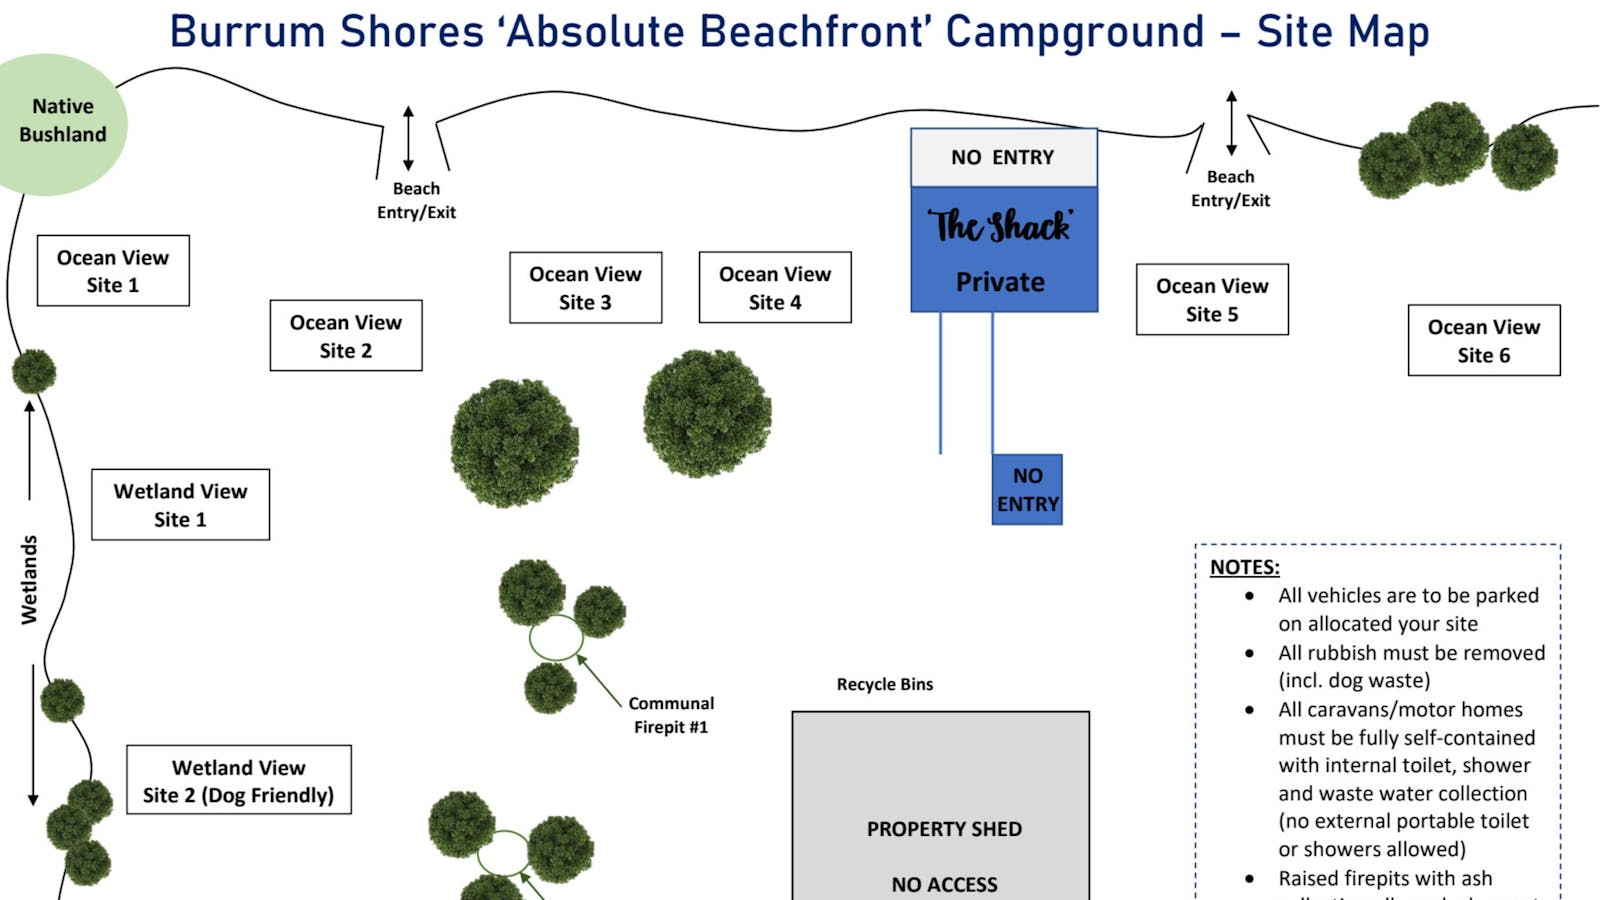 Burrum Shores Beachfront Campground Kj0384h ?rect=0%2C0%2C3840%2C2160&w=1600&h=900&rot=360&q=eyJ0eXBlIjoibGlzdGluZyIsImxpc3RpbmdJZCI6IjYzYjg1MTBiN2EzYWU2Y2I0OTE2MWM1YiIsImRpc3RyaWJ1dG9ySWQiOiI1NmIxZWViZjQ0ZmVjYTNkZjJlM2FjOWYiLCJhcGlrZXlJZCI6IjU2YjFlZmVlMGNmMjEzYWQyMGRkMjE3NCJ9